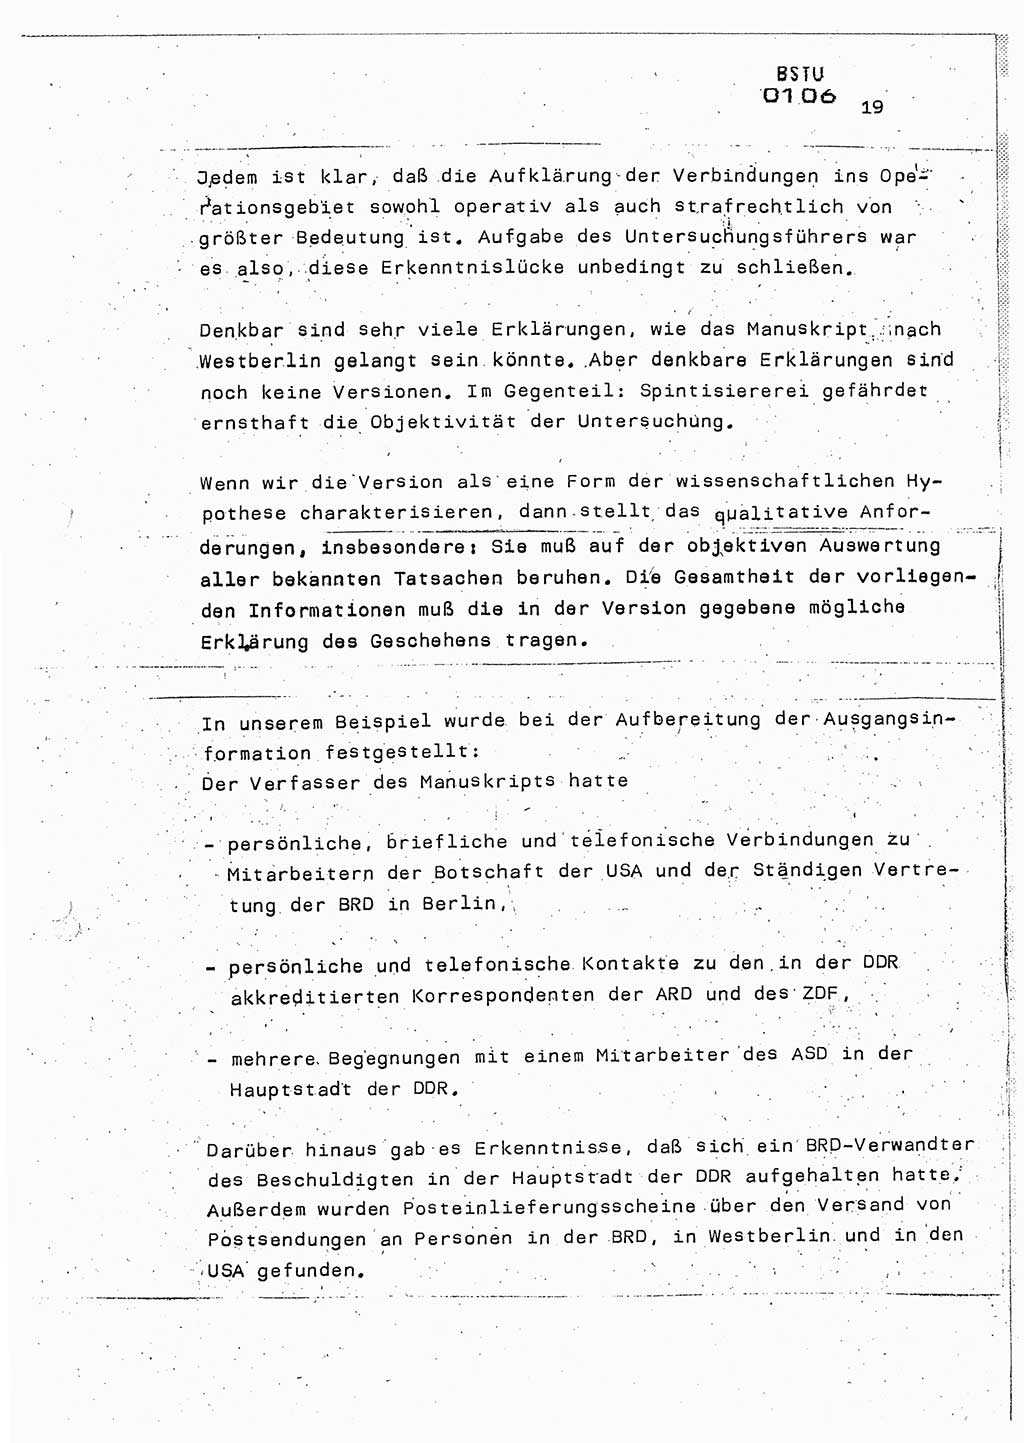 Lektion Ministerium für Staatssicherheit (MfS) [Deutsche Demokratische Republik (DDR)], Hauptabteilung (HA) Ⅸ, Berlin 1987, Seite 19 (Lekt. Pln. Bearb. EV MfS DDR HA Ⅸ /87 1987, S. 19)